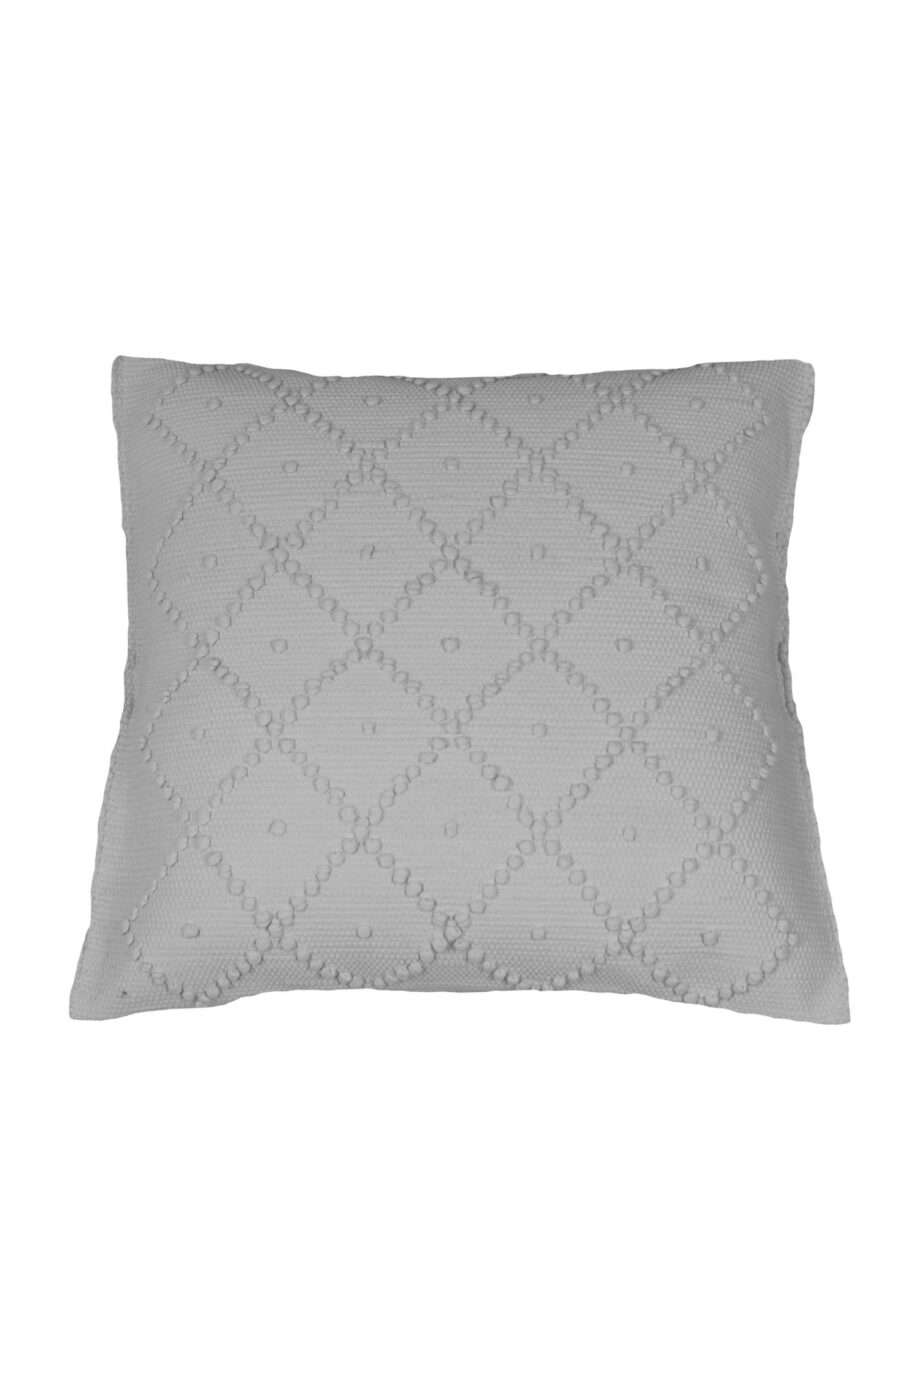 diamond white woven cotton pillowcase medium